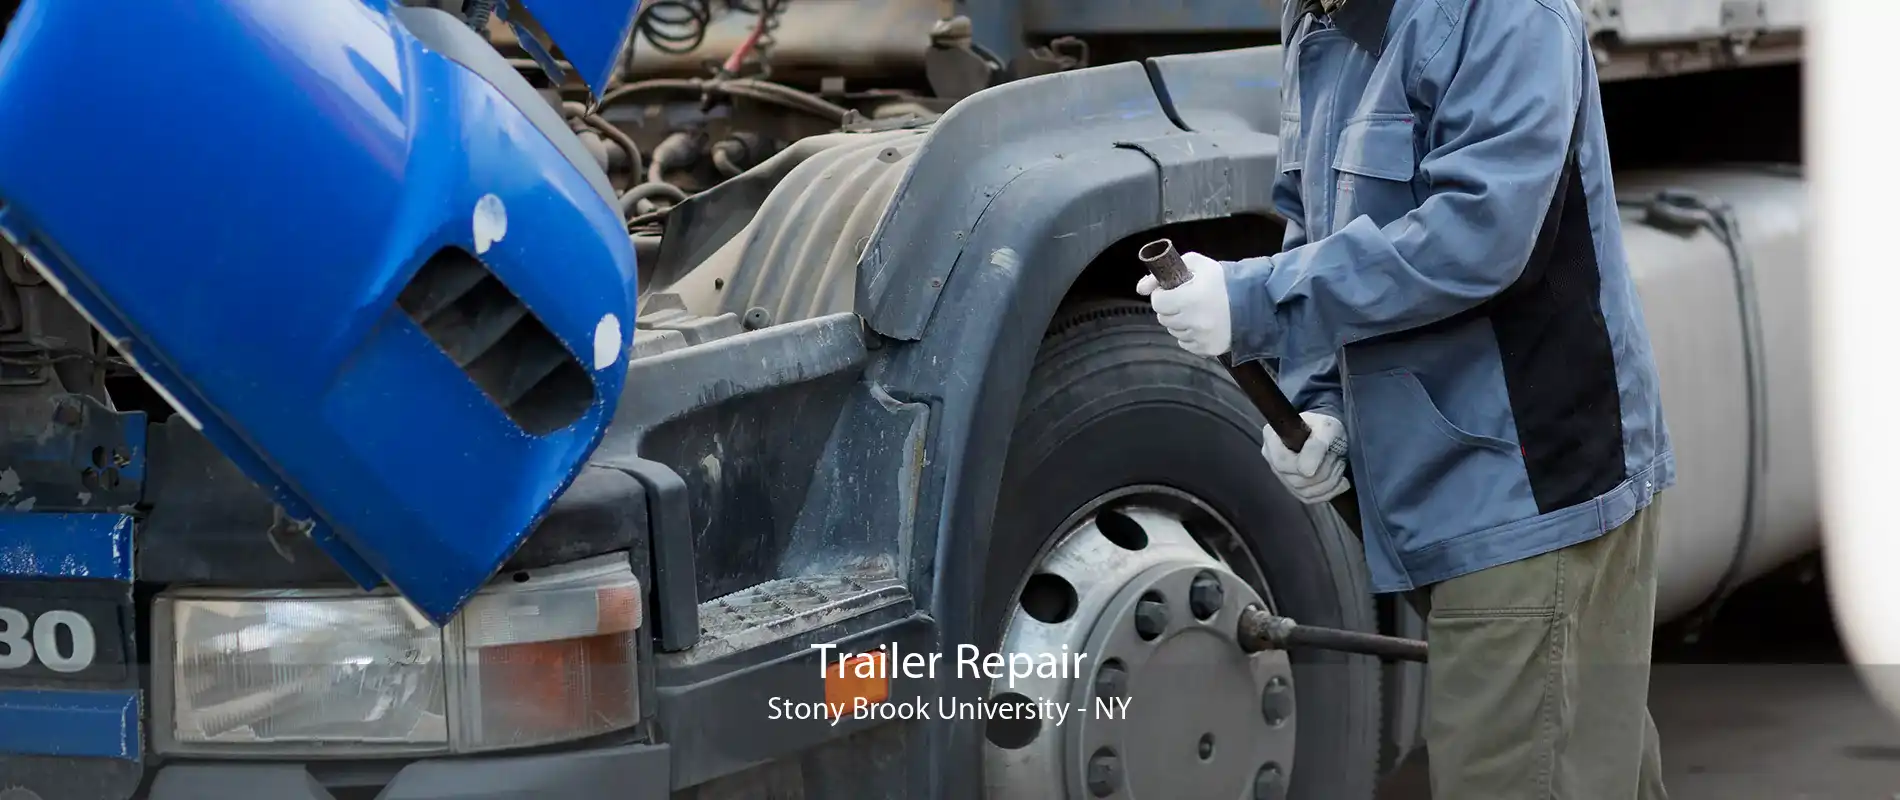 Trailer Repair Stony Brook University - NY